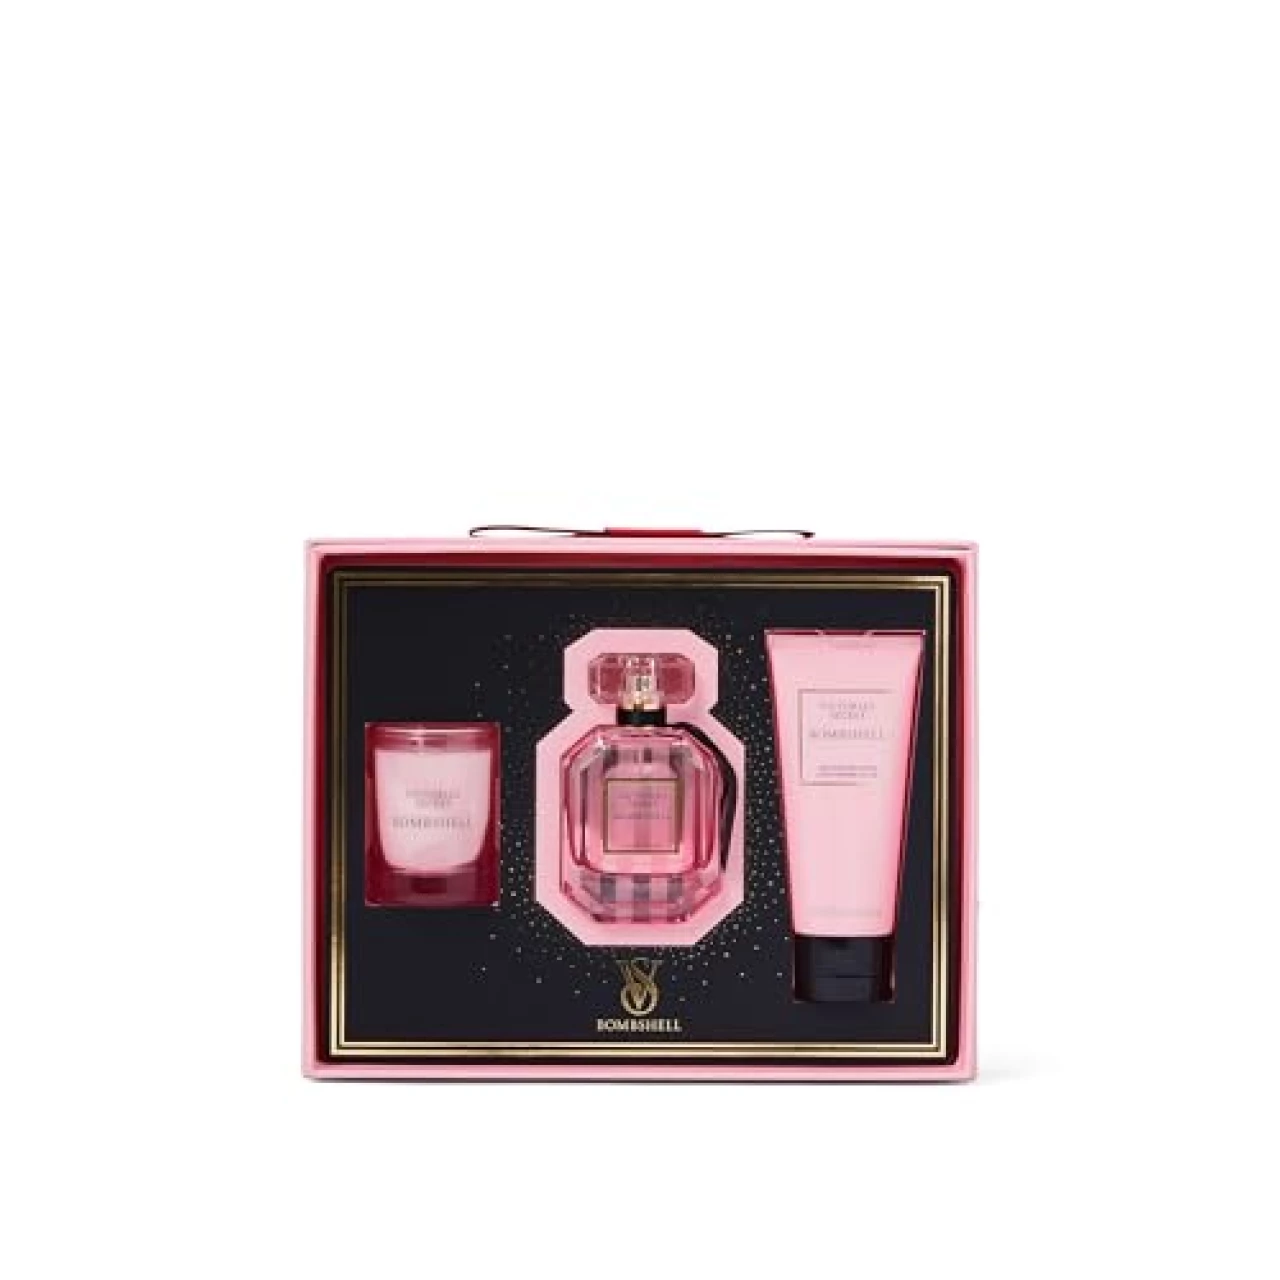 Victoria&rsquo;s Secret Bombshell 3 Piece Luxe Fragrance Gift Set: 1.7 oz. Eau de Parfum, Travel Lotion, &amp; Candle